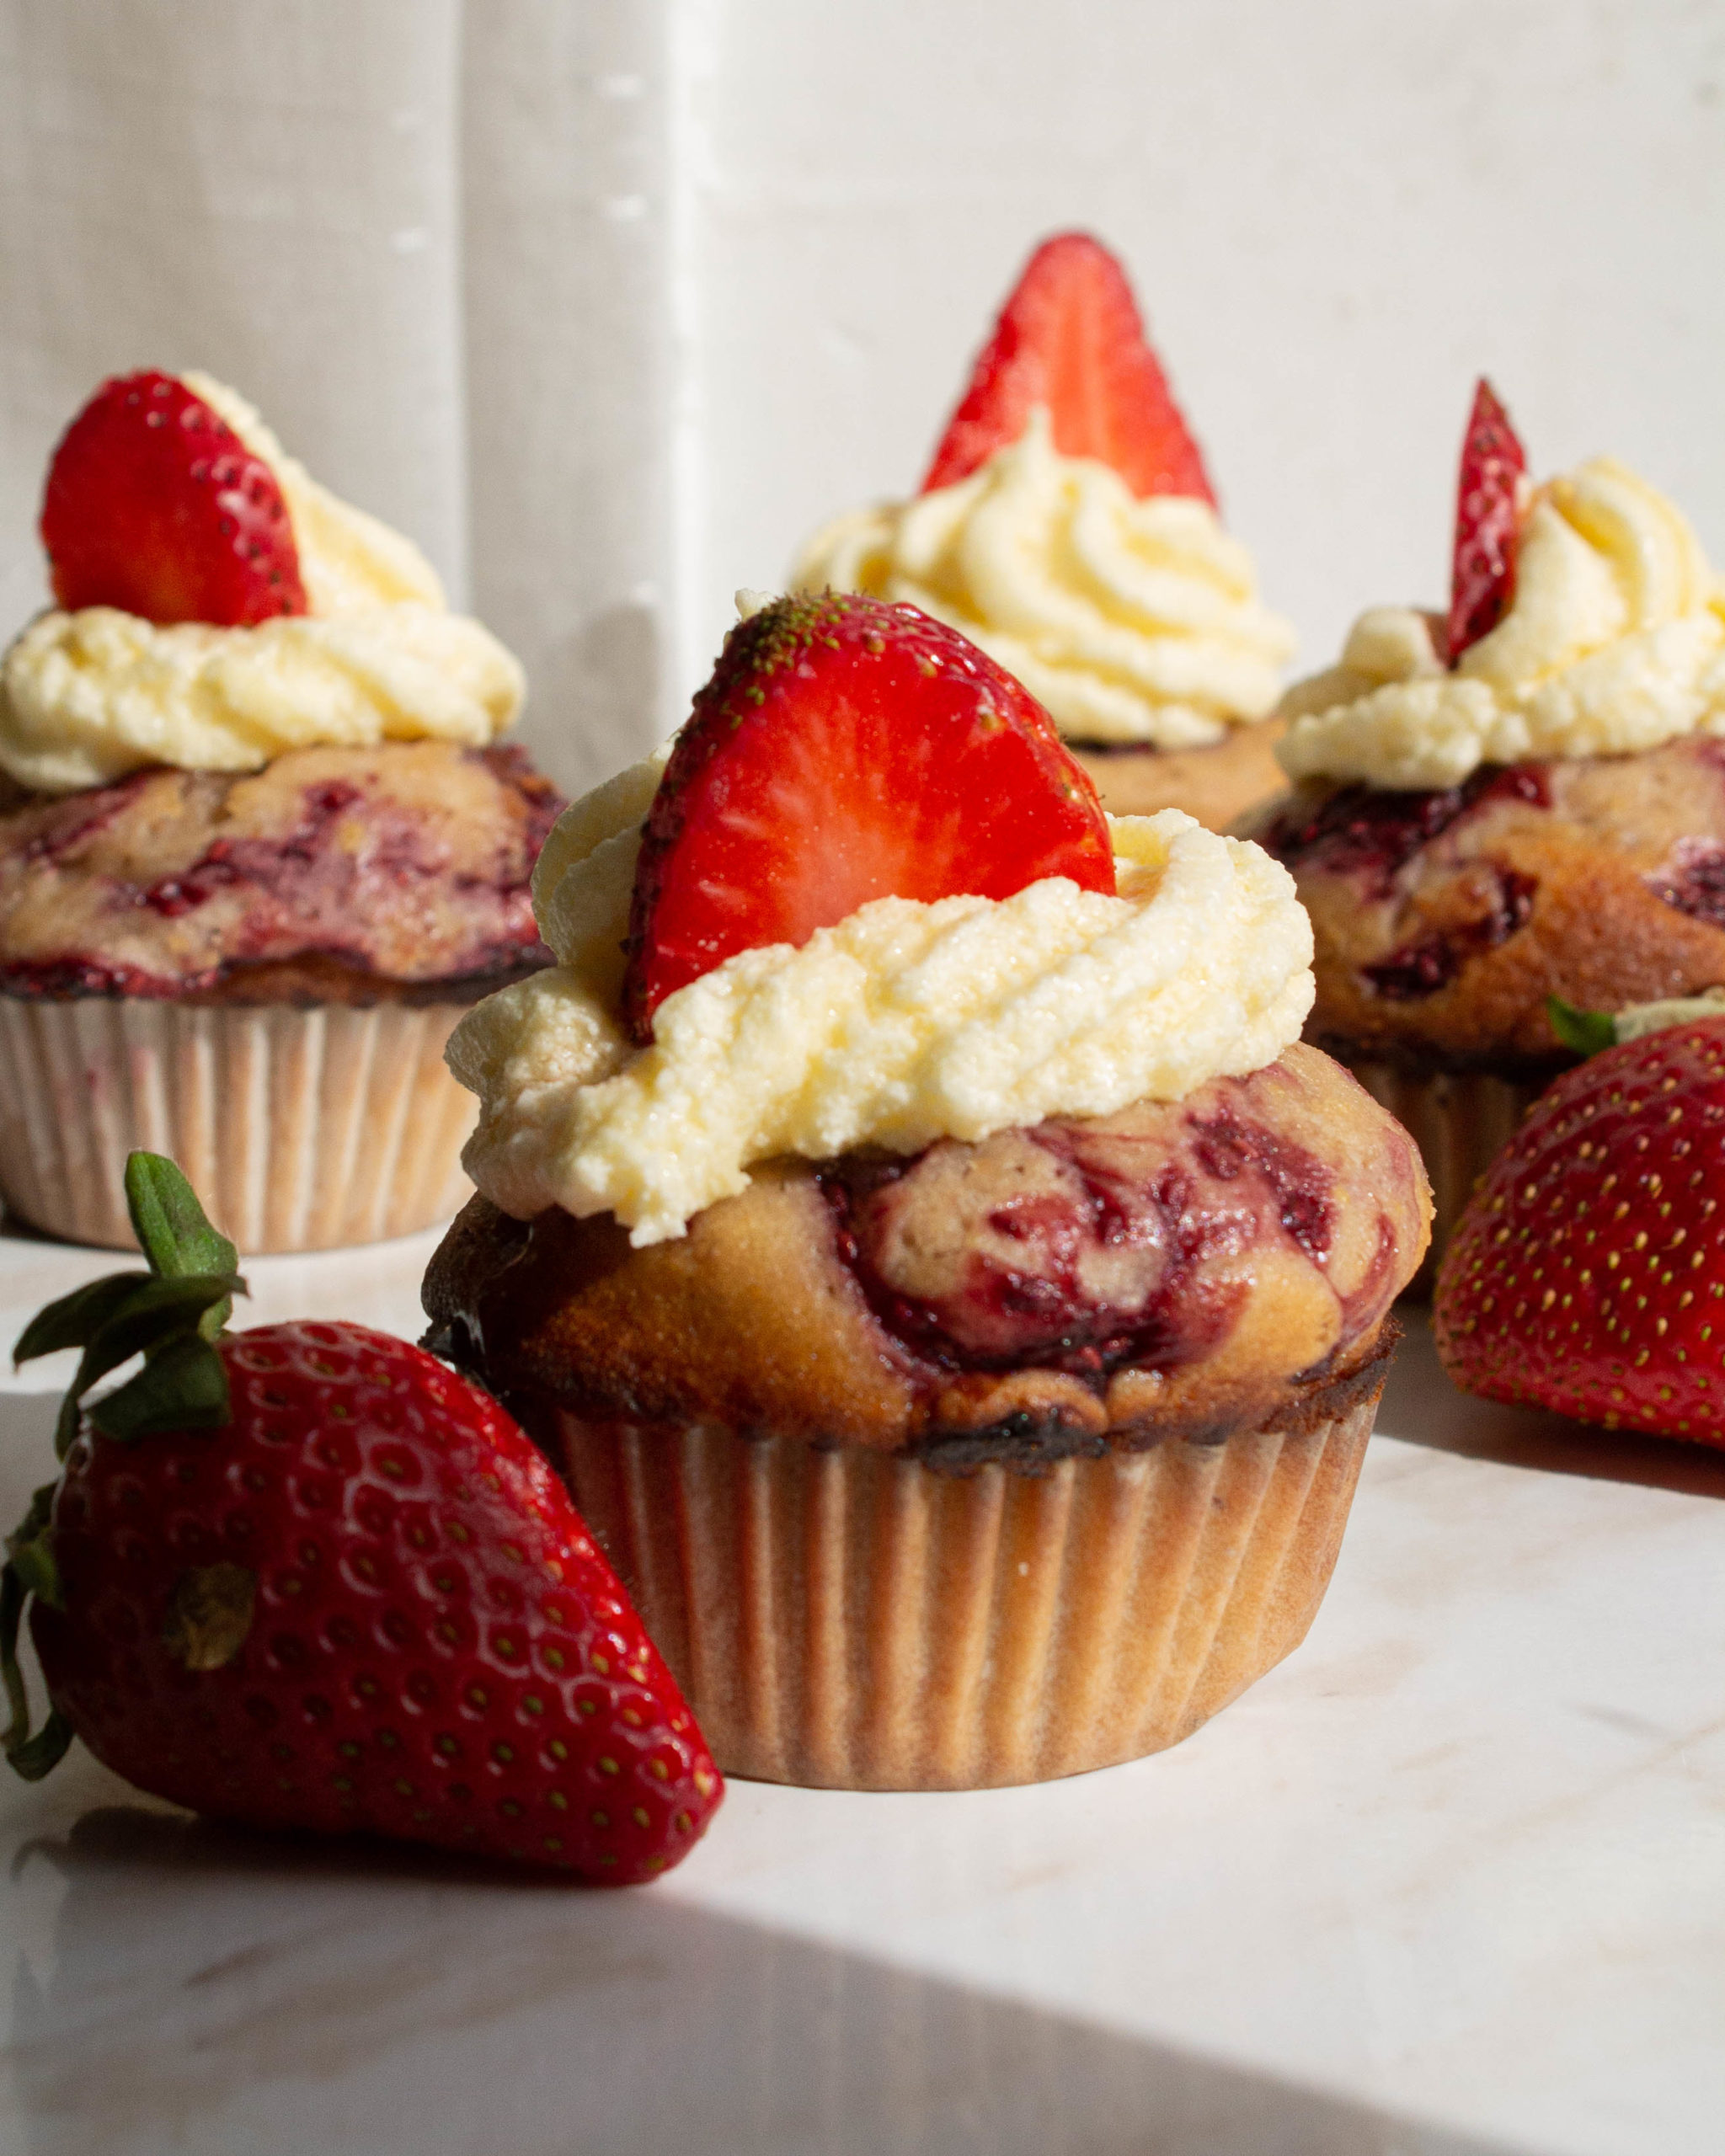 Strawberry Jam Cupcakes
